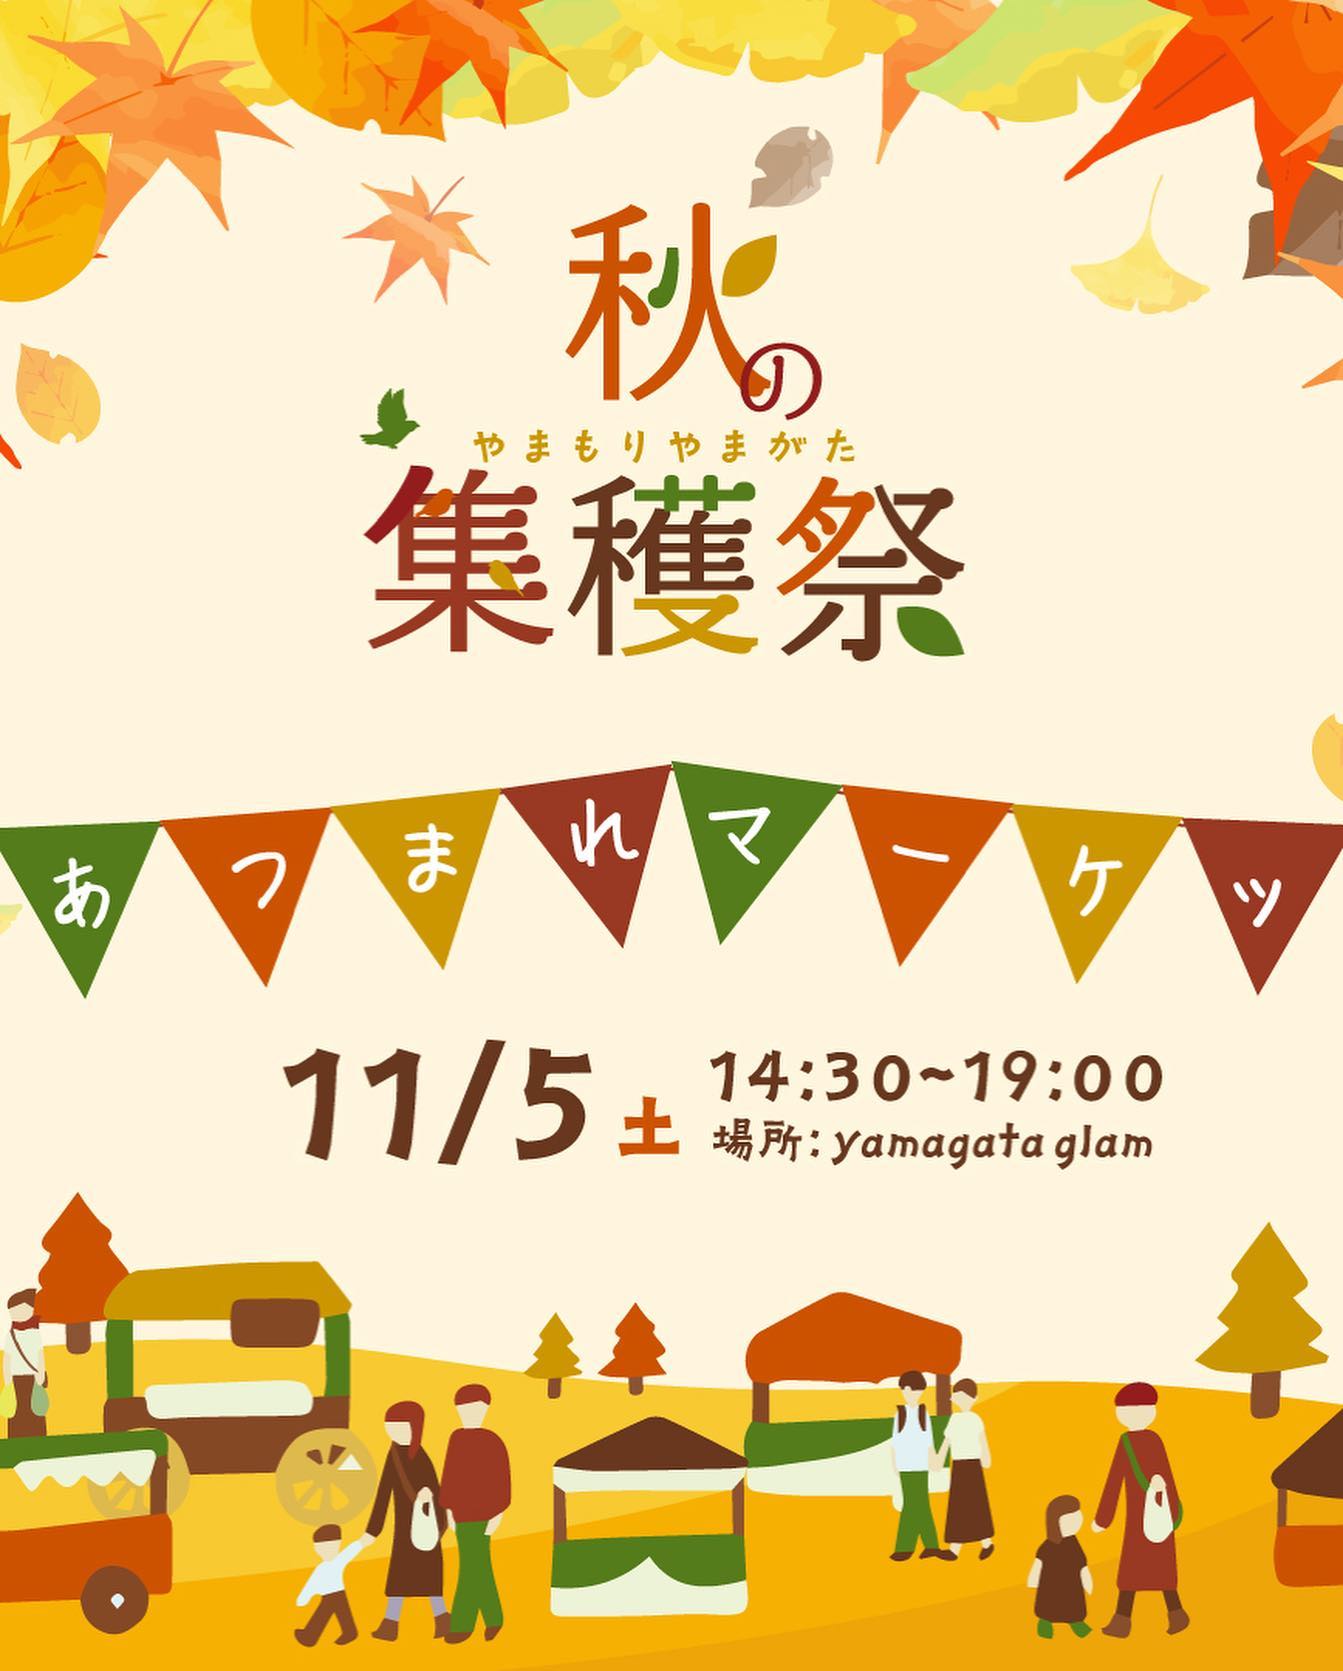 秋の集穫祭
碁点温泉のお隣りにある
Yamagata glamで開催️
グランピングてどんなん？
11／5  14:30〜19:00
クラッカーも参加するよ〜

https://www.instagram.com/p/CkfrBxDLnkh/?igshid=YmMyMTA2M2Y=